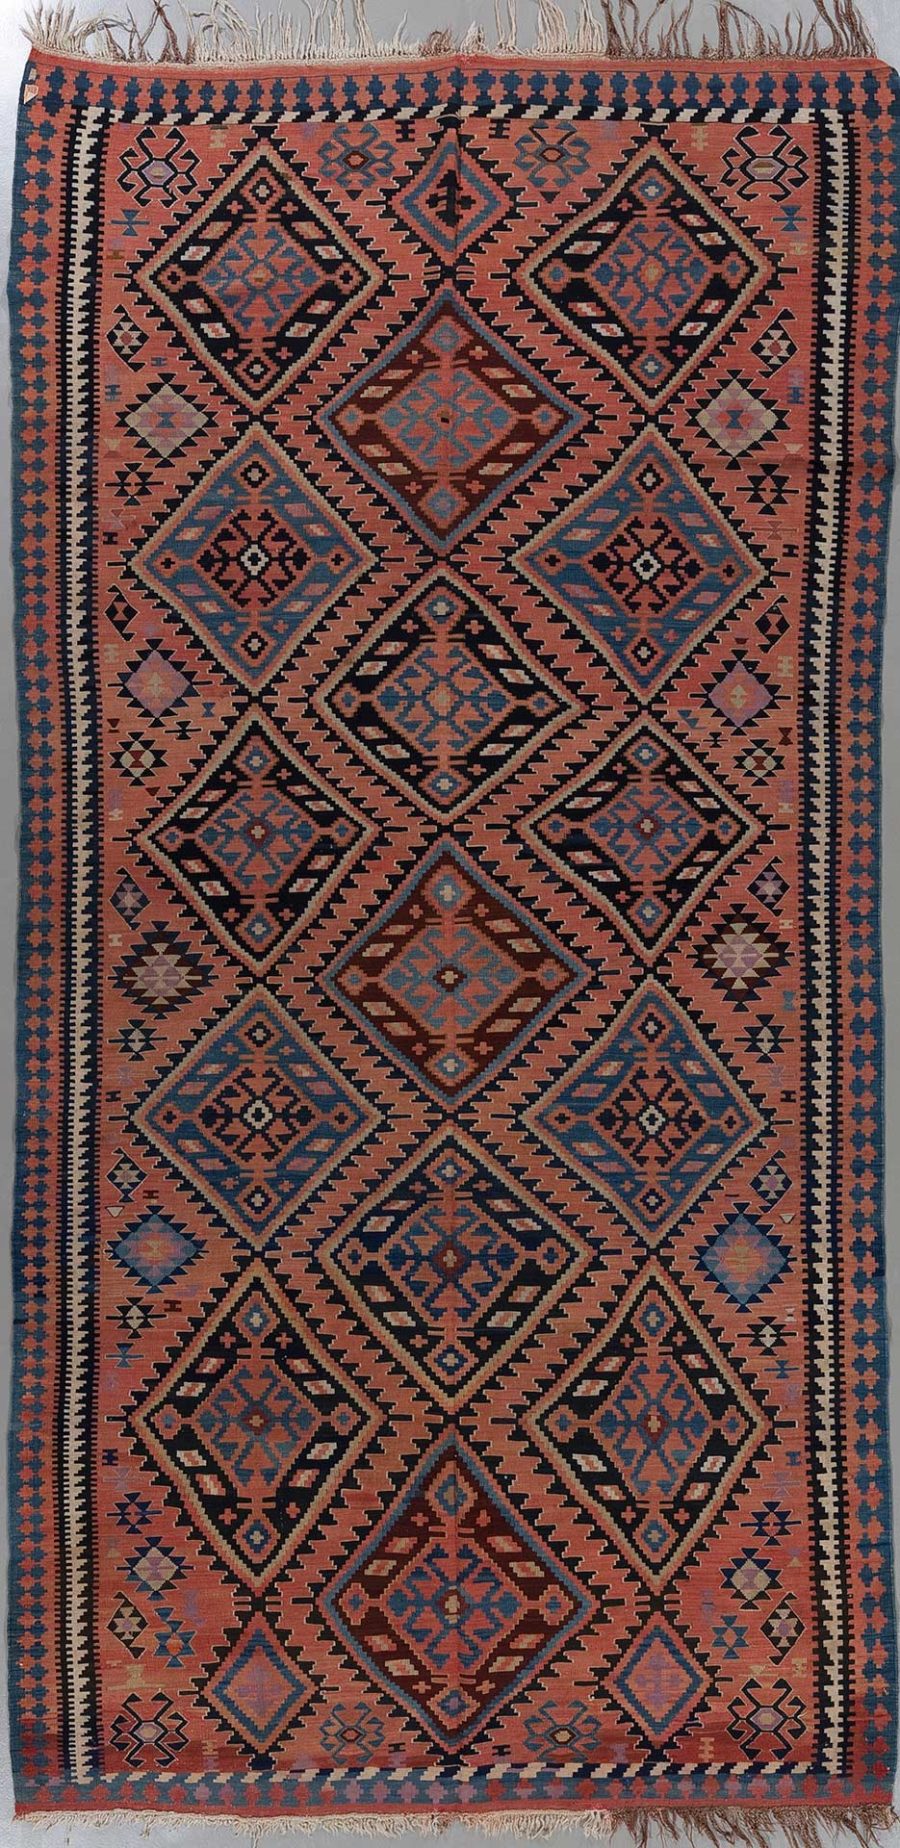 Traditioneller handgewebter Teppich mit komplexem Muster aus Diamanten und geometrischen Formen in Erdtönen mit blauen und roten Akzenten.